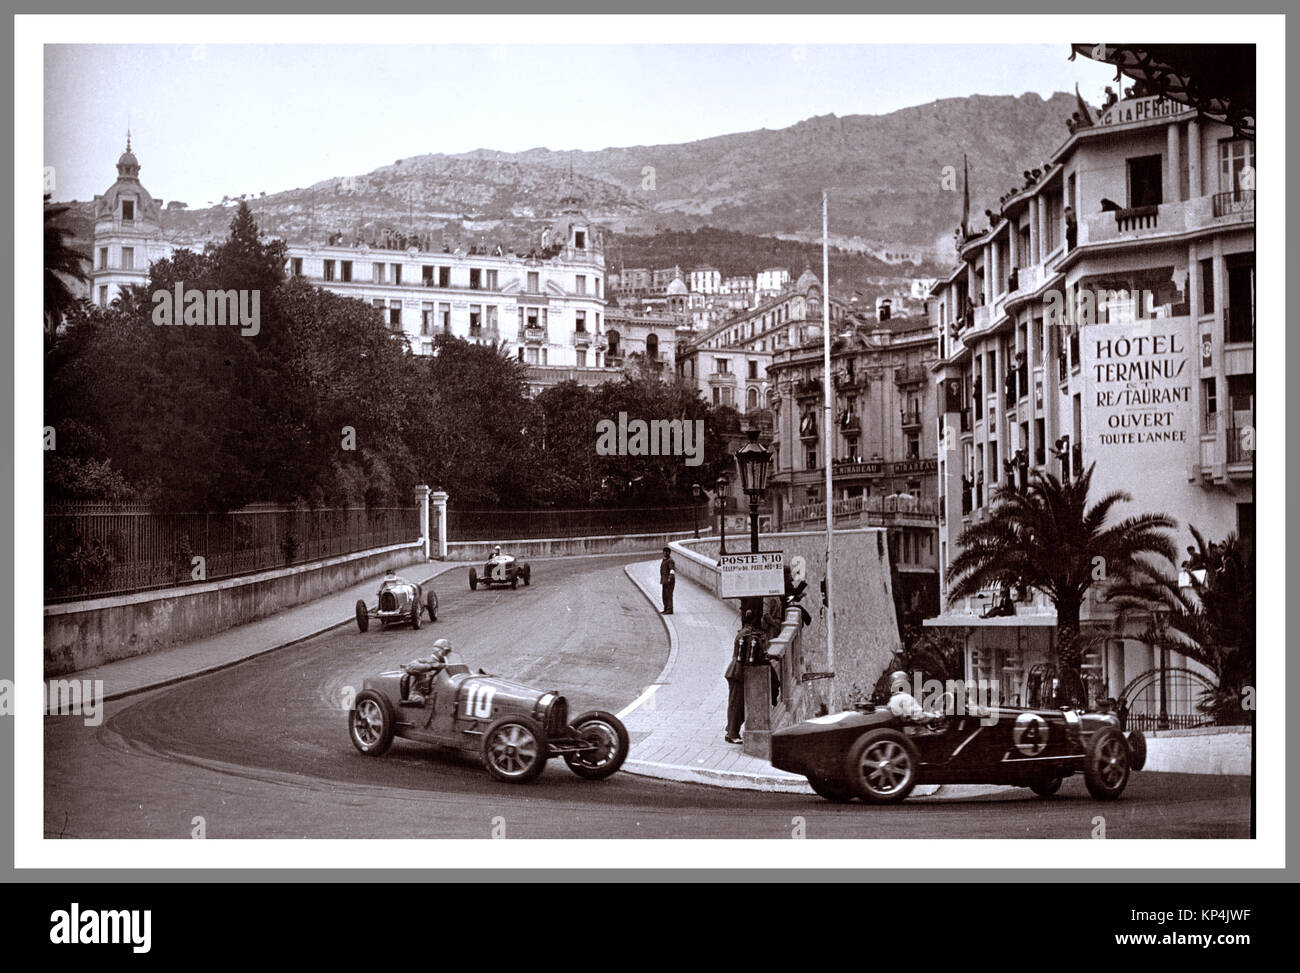 Monaco Vintage B&W Bild des Grand Prix von Monaco 1932 1932 beim Grand Prix von Monaco war ein Grand-prix-Rennen auf dem Circuit de Monaco am 17. April 1932 statt. Tazio Nuvolari, fahren für die Werke Alfa Romeo Team, gewann das Rennen von nur 2,8 Sekunden Stockfoto